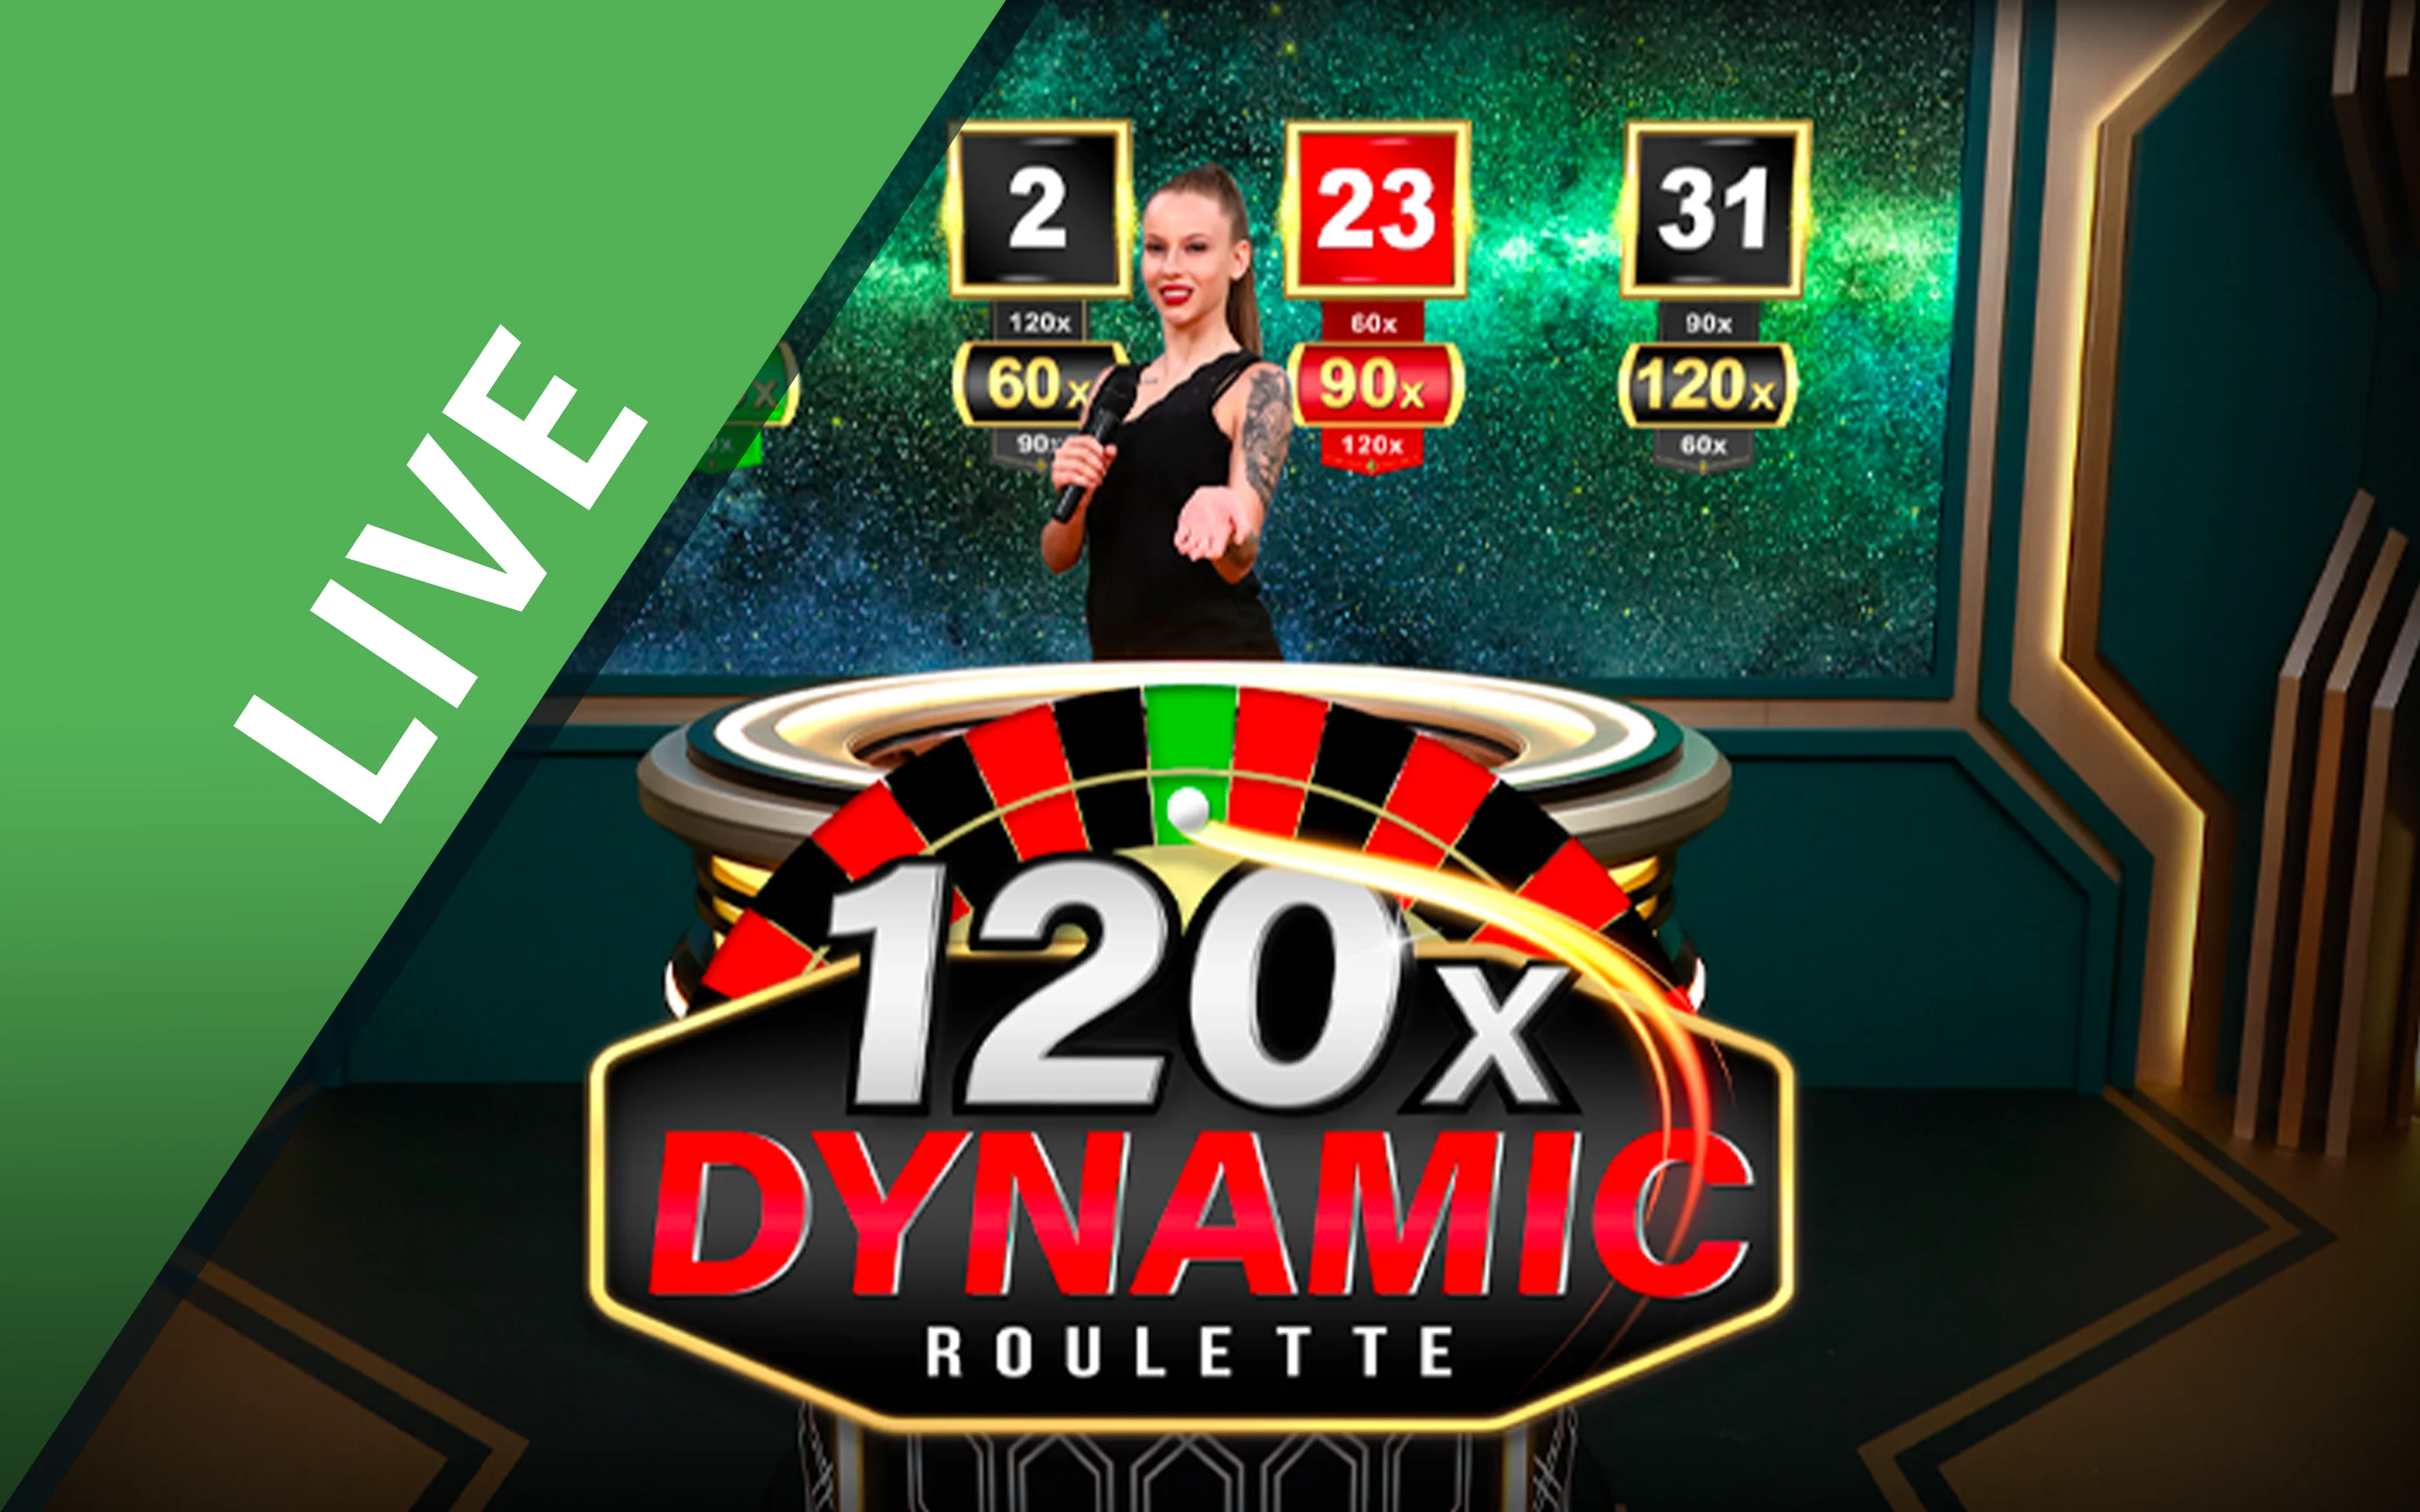 Грайте у Dynamic Roulette 120x в онлайн-казино Starcasino.be